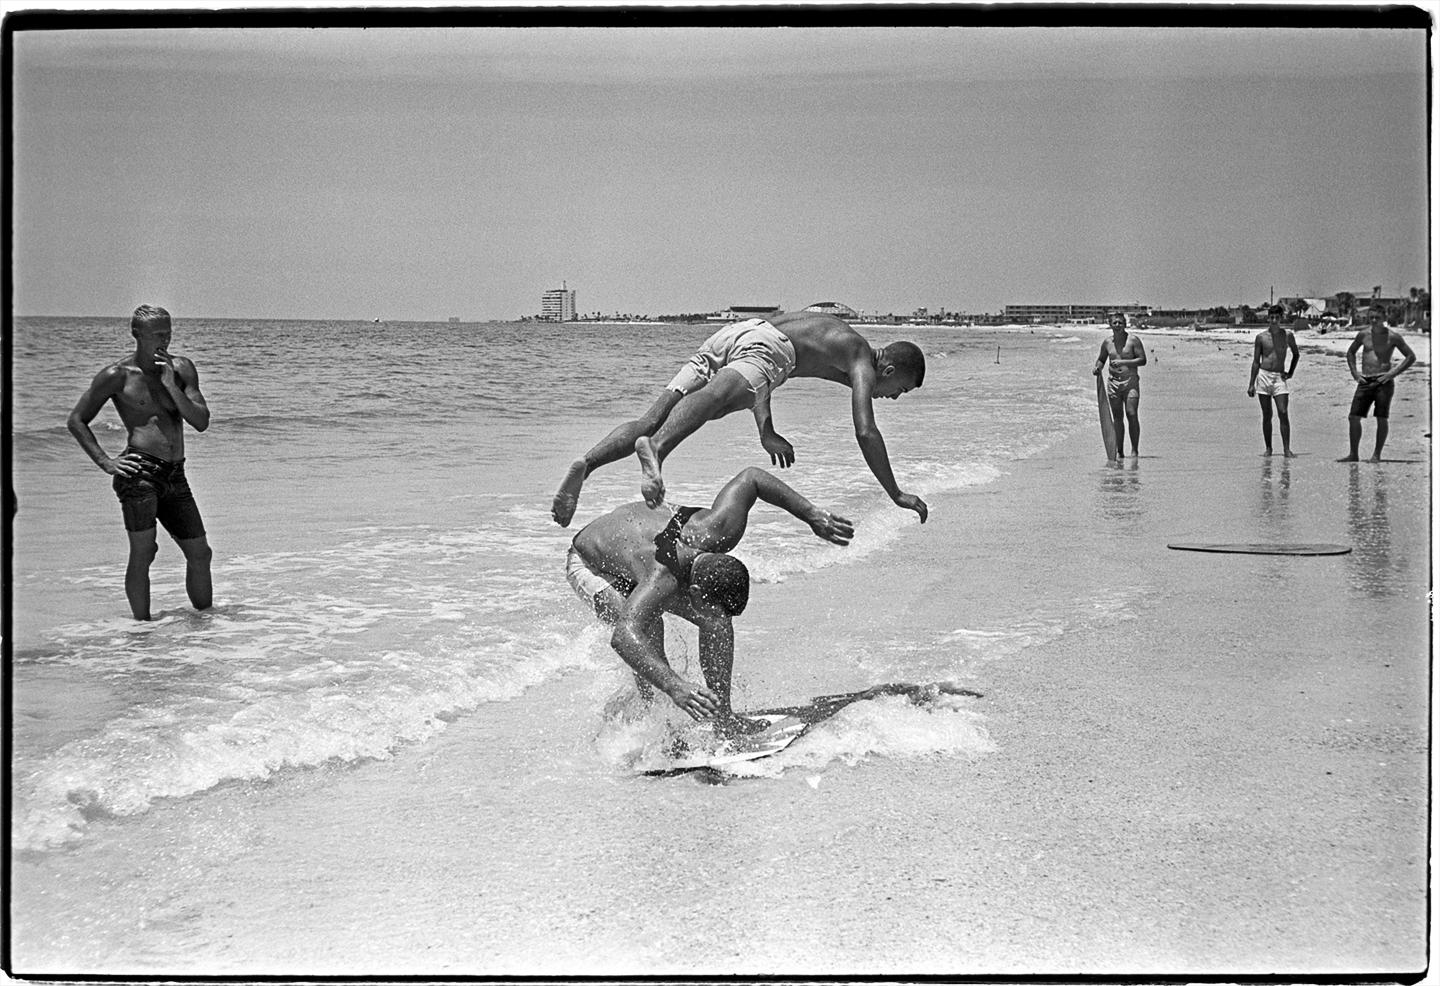 Surf Skimmers von Al Satterwhite fängt den unbeschwerten und fröhlichen Geist von Jugendlichen ein, die am Strand spielen,  Ein Junge springt über einen anderen und taucht dabei fast kopfüber in den Sand, während eine Gruppe in der Ferne zusieht.